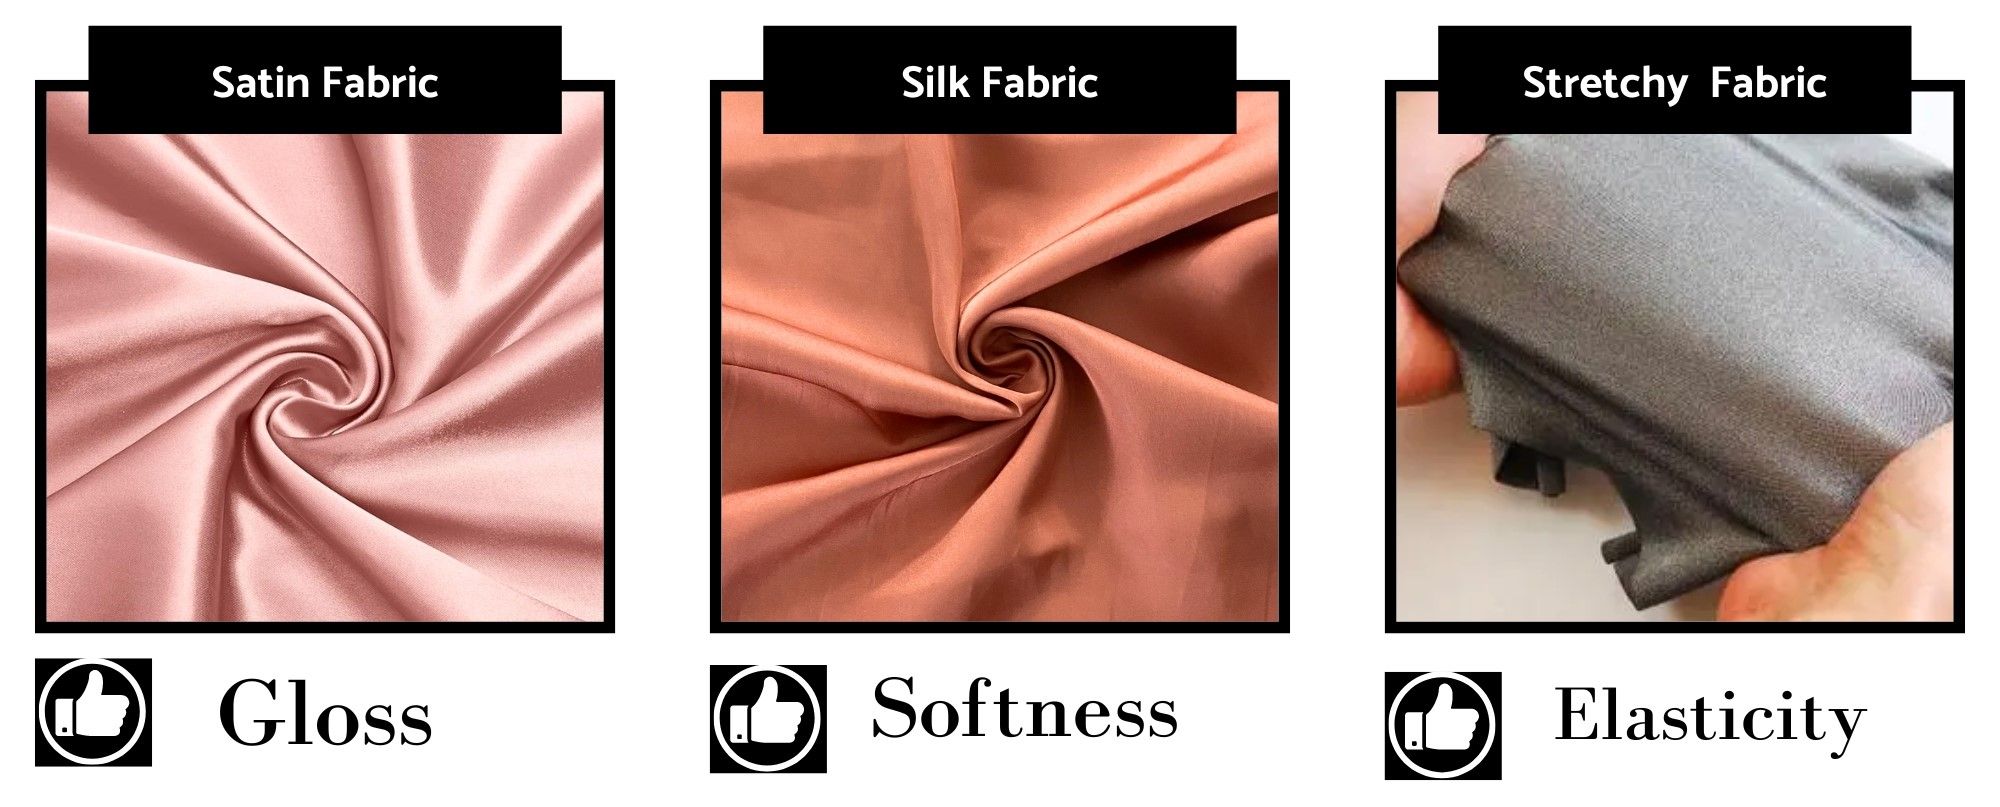 Forkæl dig selv med den ultimative luksus med en silke hårelastik, der er omhyggeligt fremstillet på vores fabrik.